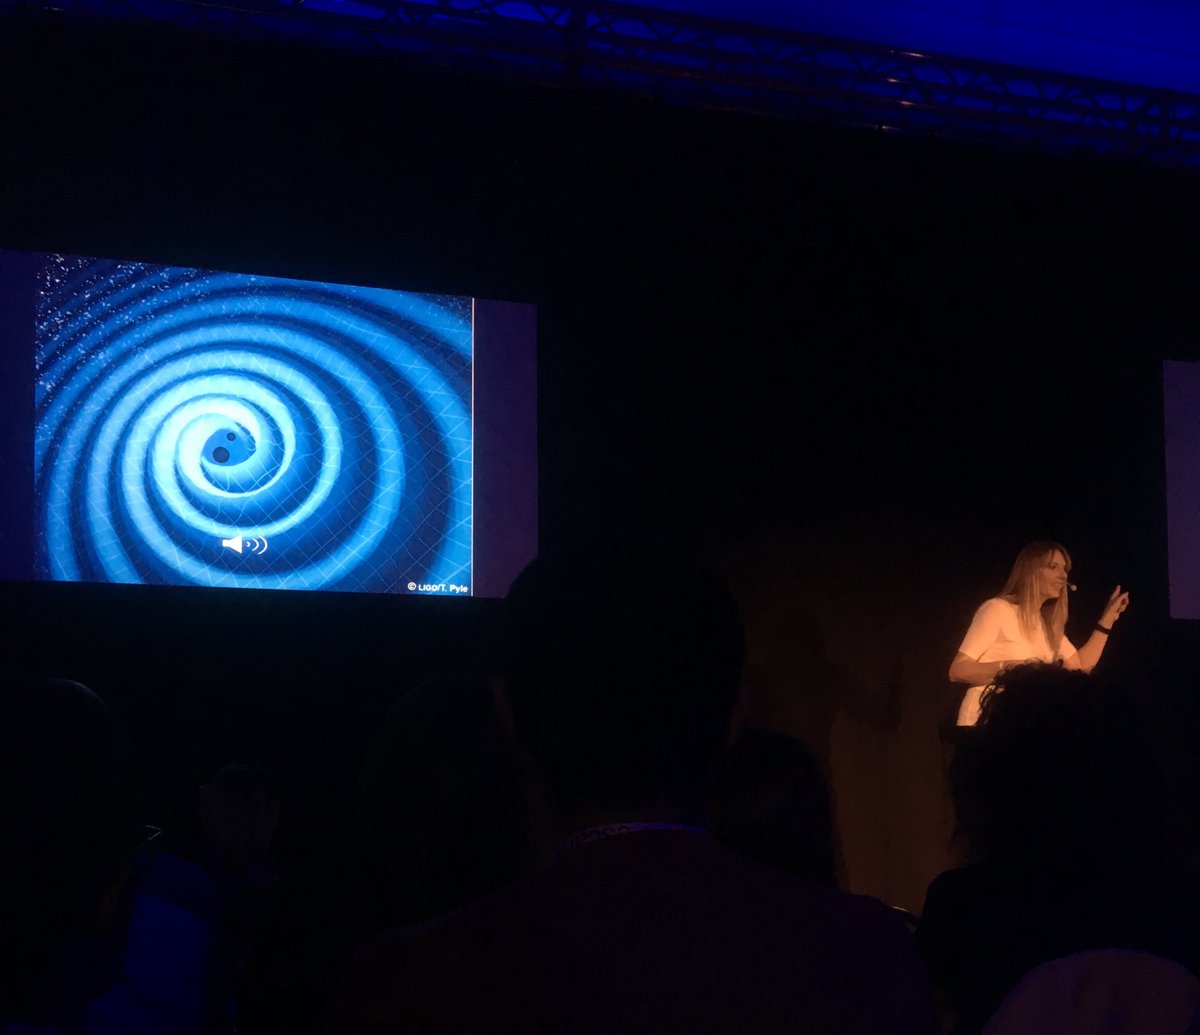 Il suono dell’onda gravitazionale. Gentile, potente. @PAOLAC #TEDxPescara